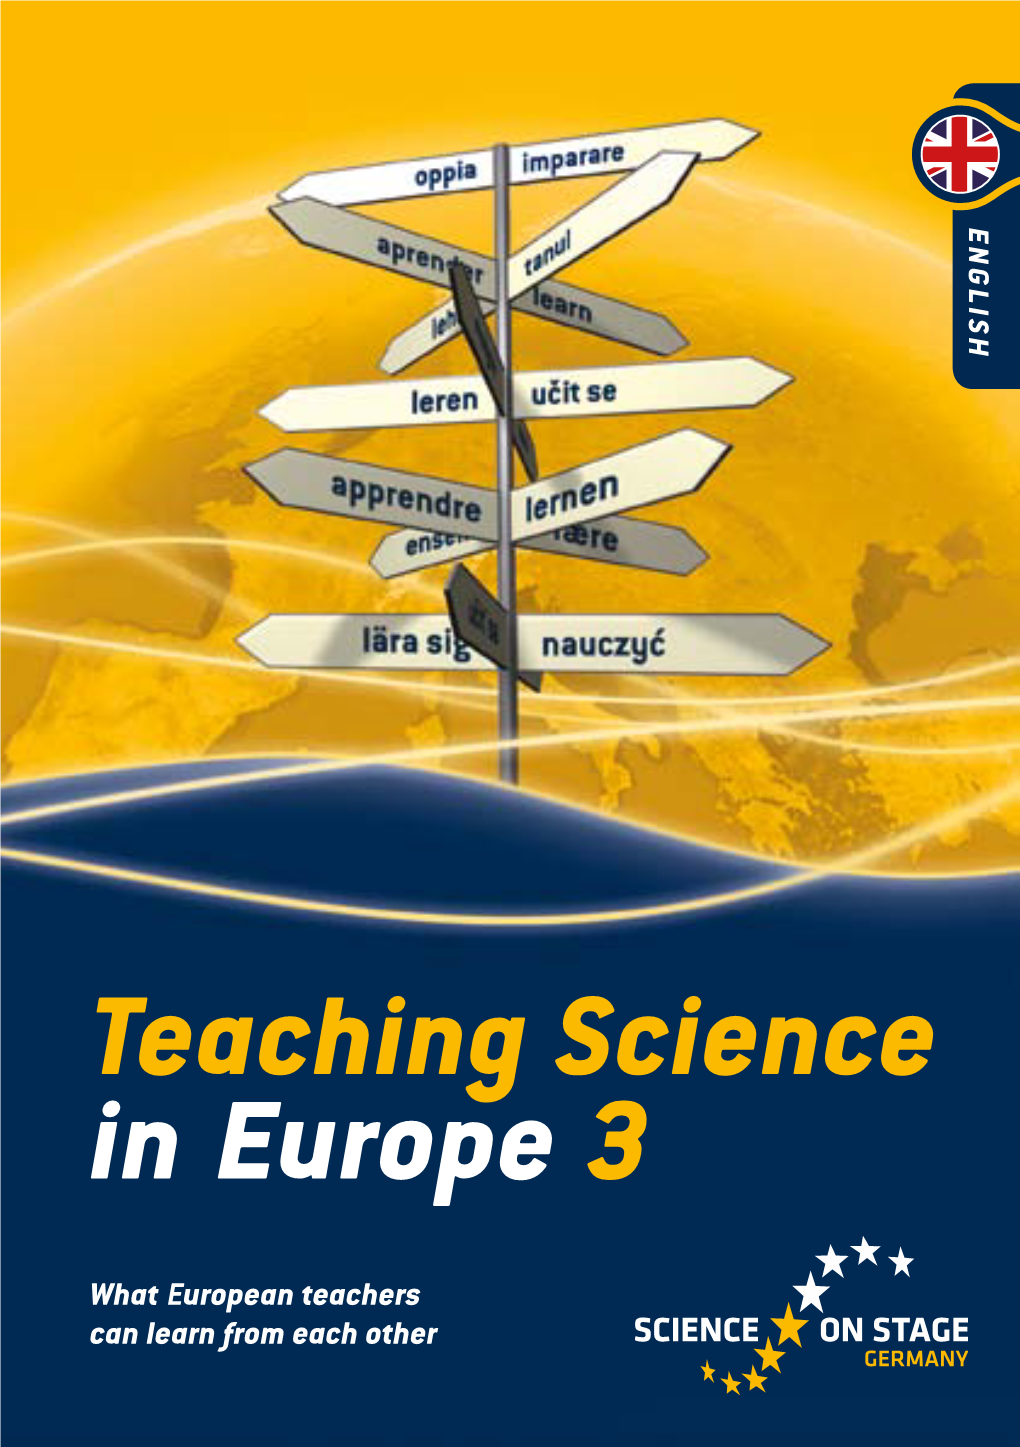 Teaching Science in Europe 3